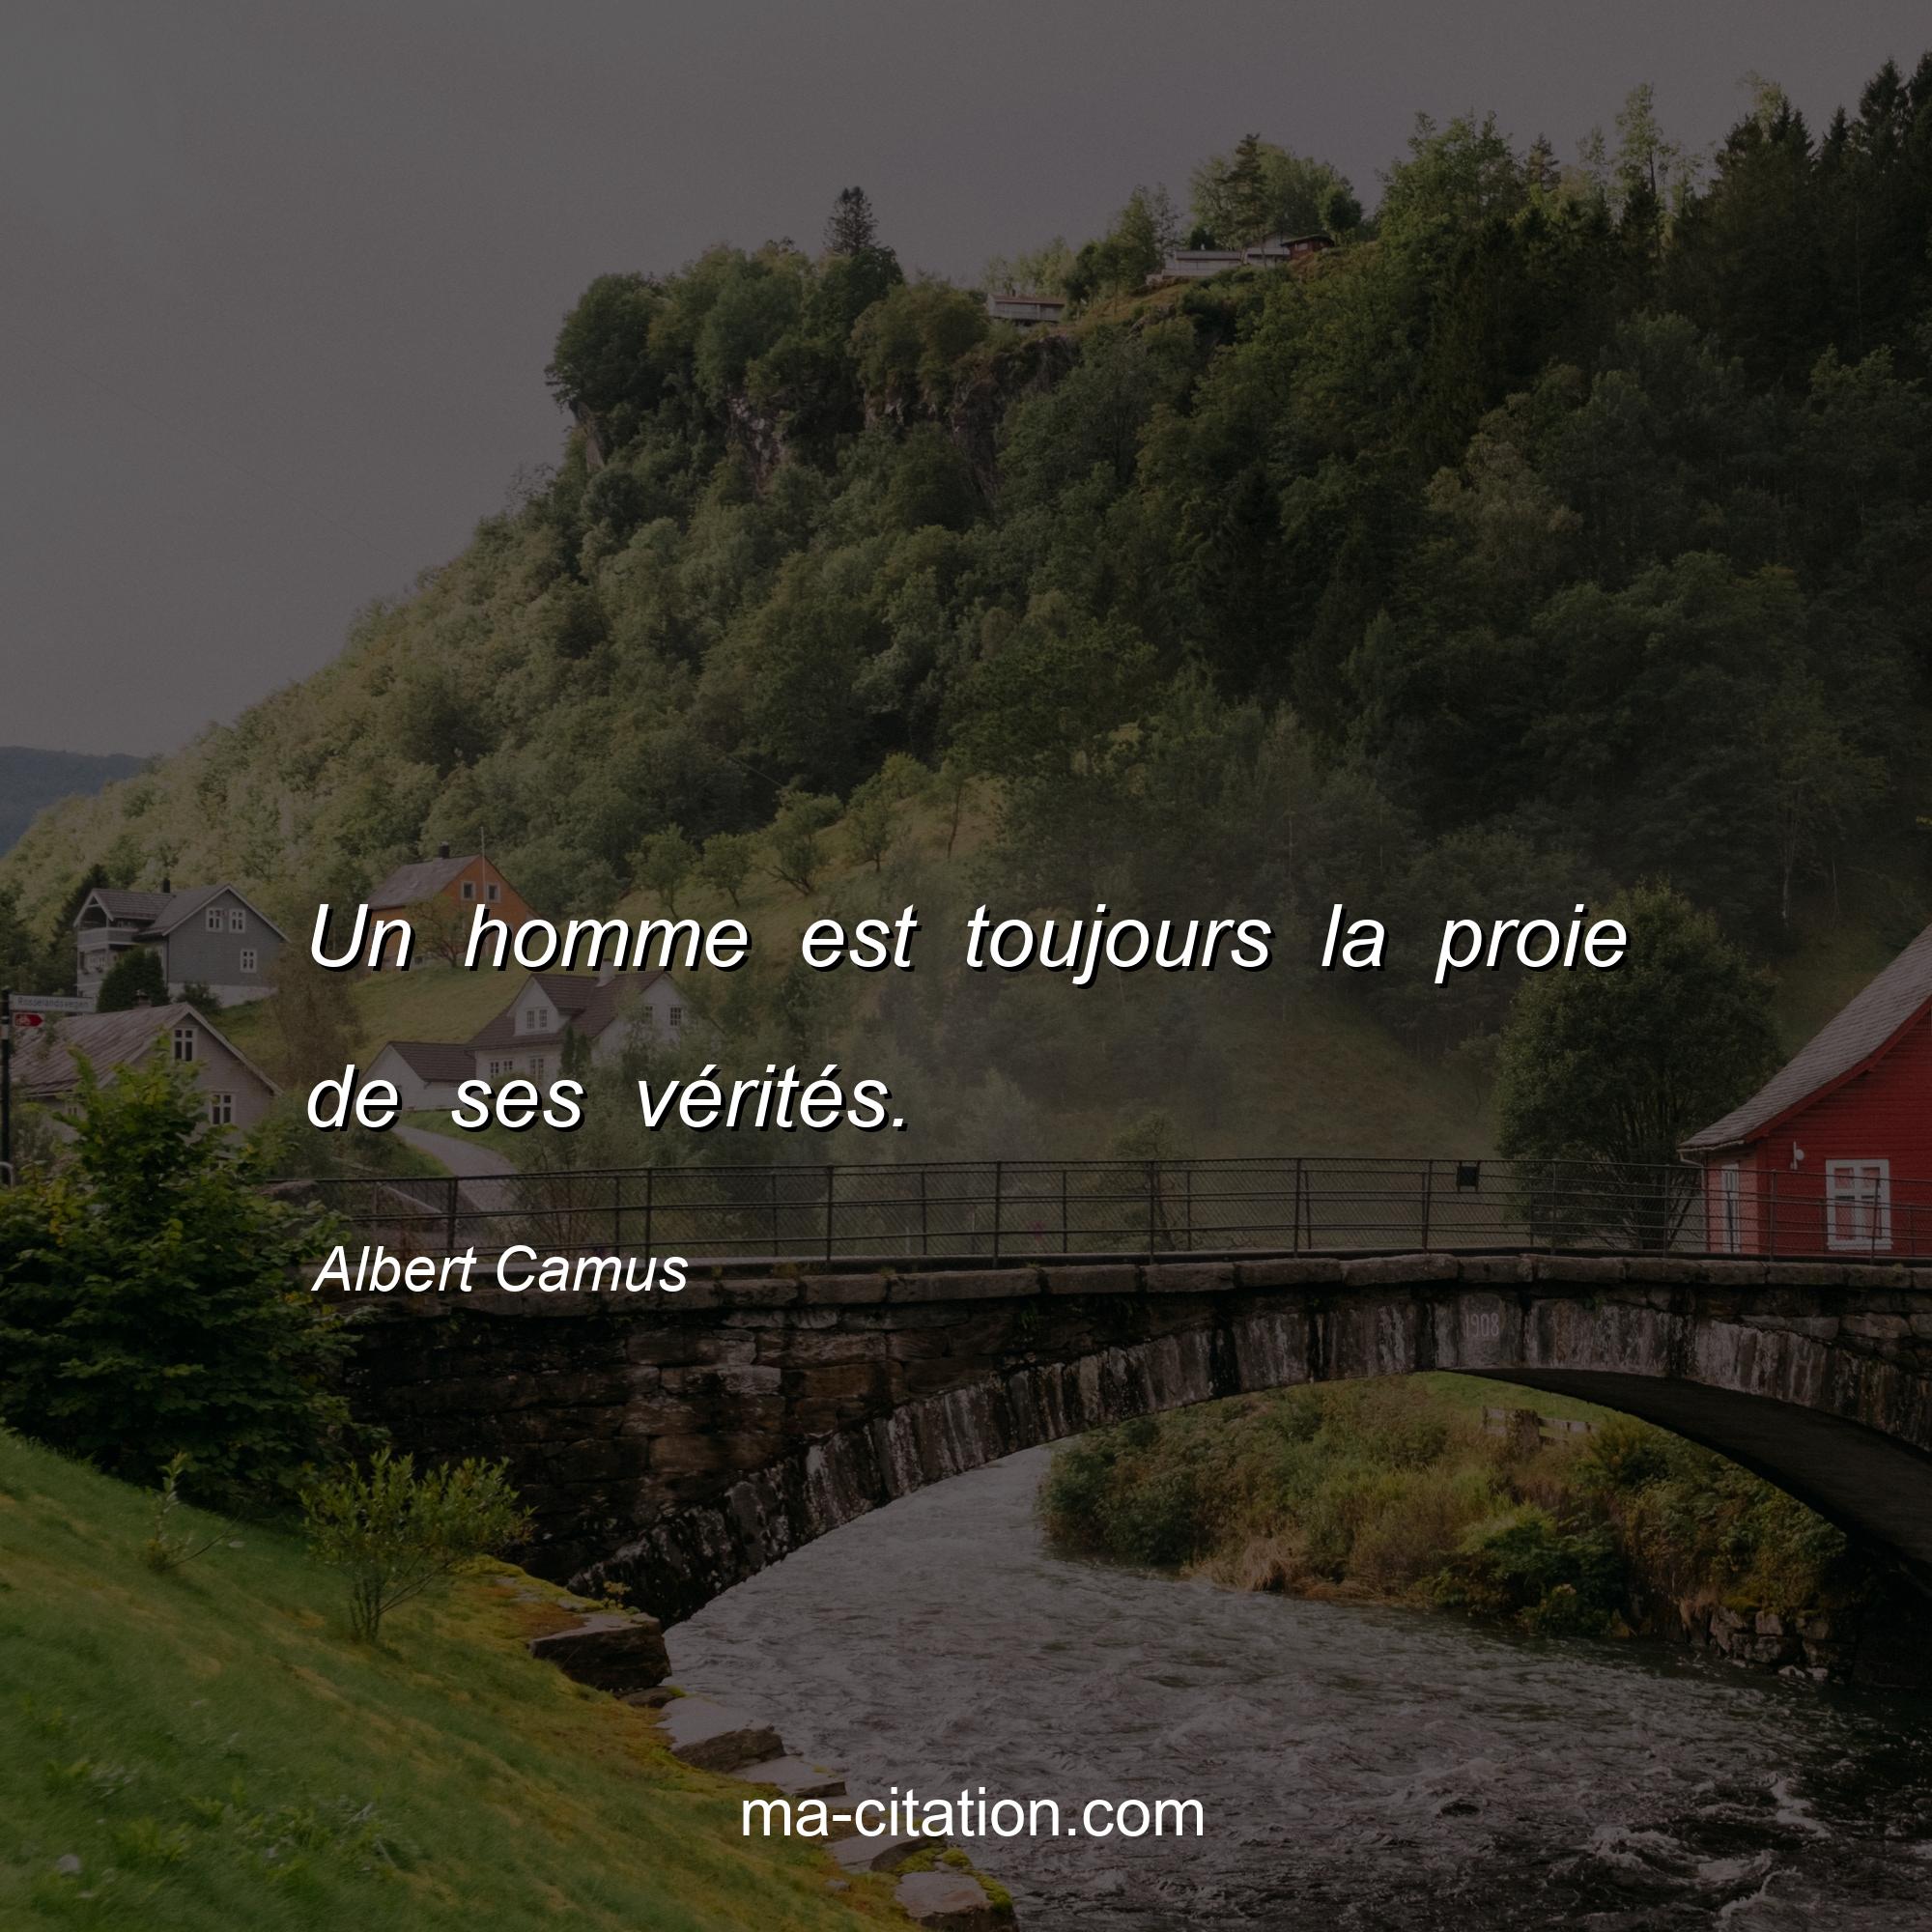 Albert Camus : Un homme est toujours la proie de ses vérités.